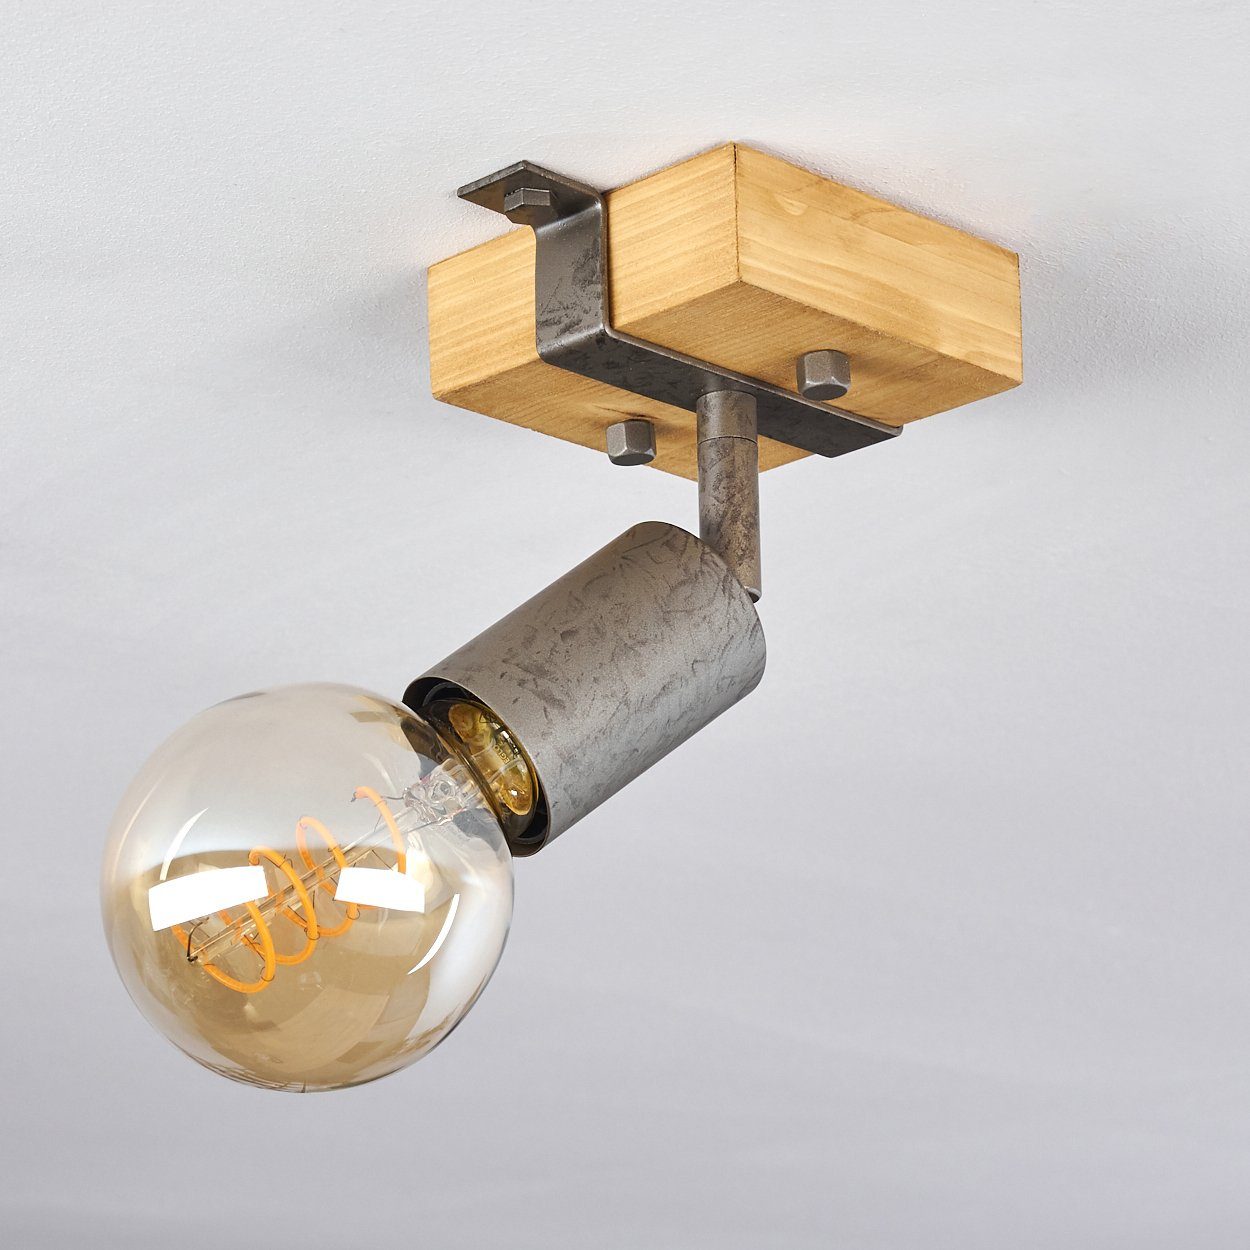 Grau/Natur, ohne hofstein Fassung, in 1xE27 Deckenleuchte im Metall/Holz aus Leuchtmittel, Wandlampe »Faro« Wandspot Industrial-Design verstellbare